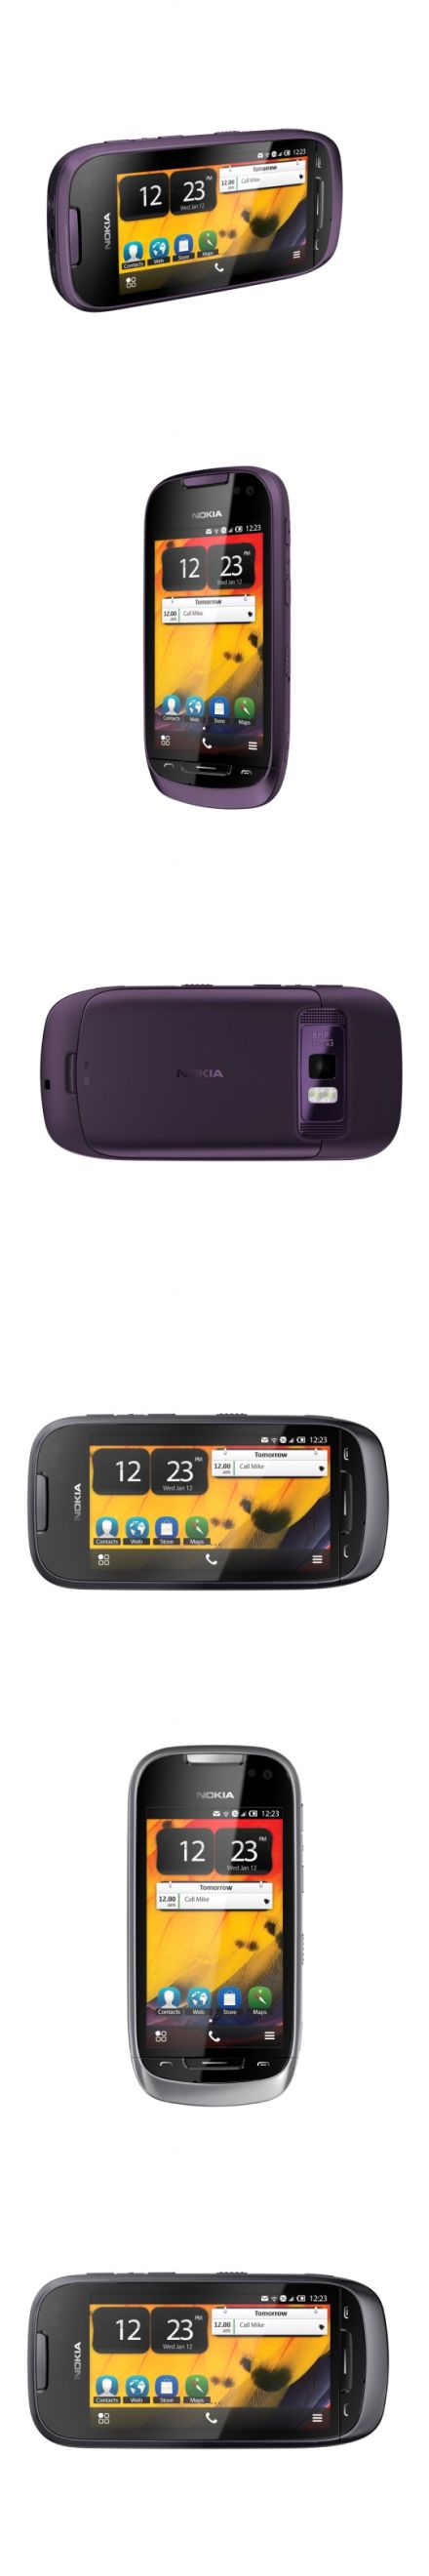 Nokia 701: a legfényesebb kijelzővel a világon